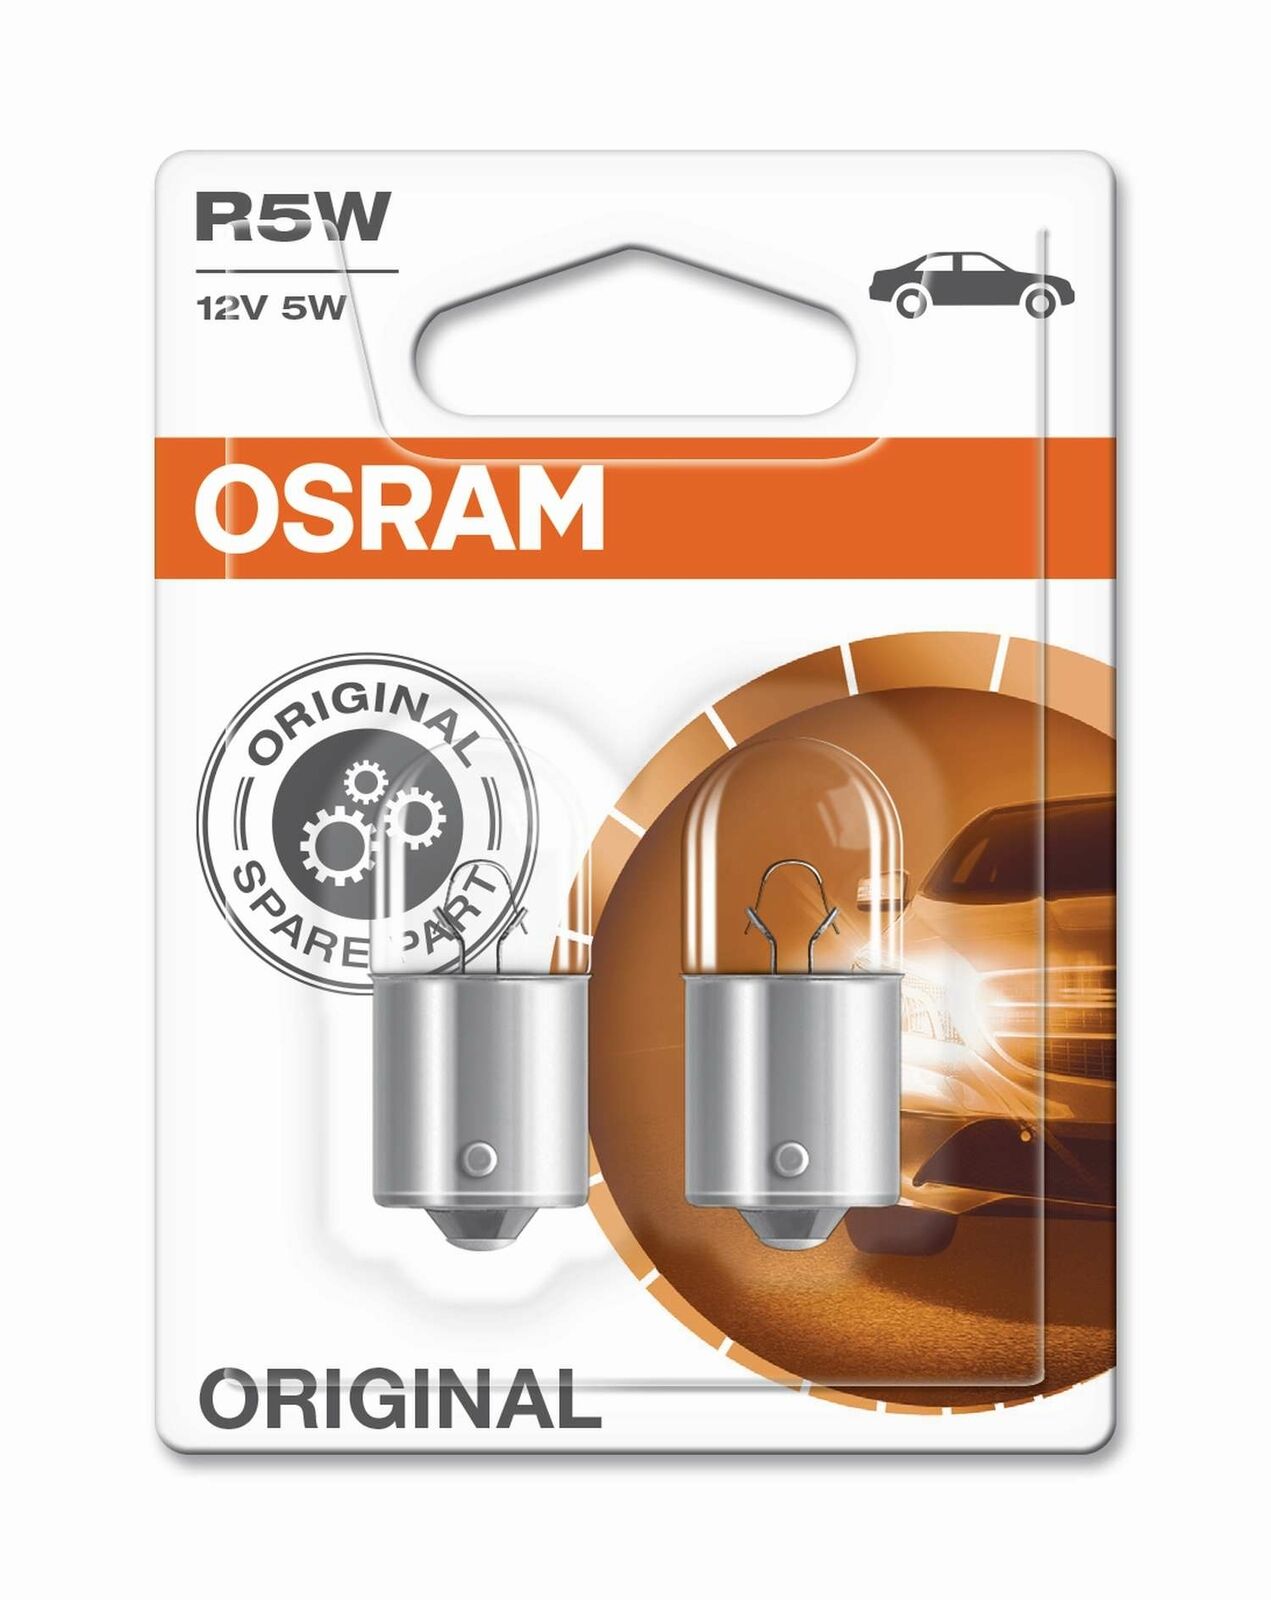 2 x Osram R5W Lamps 12V 5W BA15s 2pcs OSRAM Bulb Lamp Blister